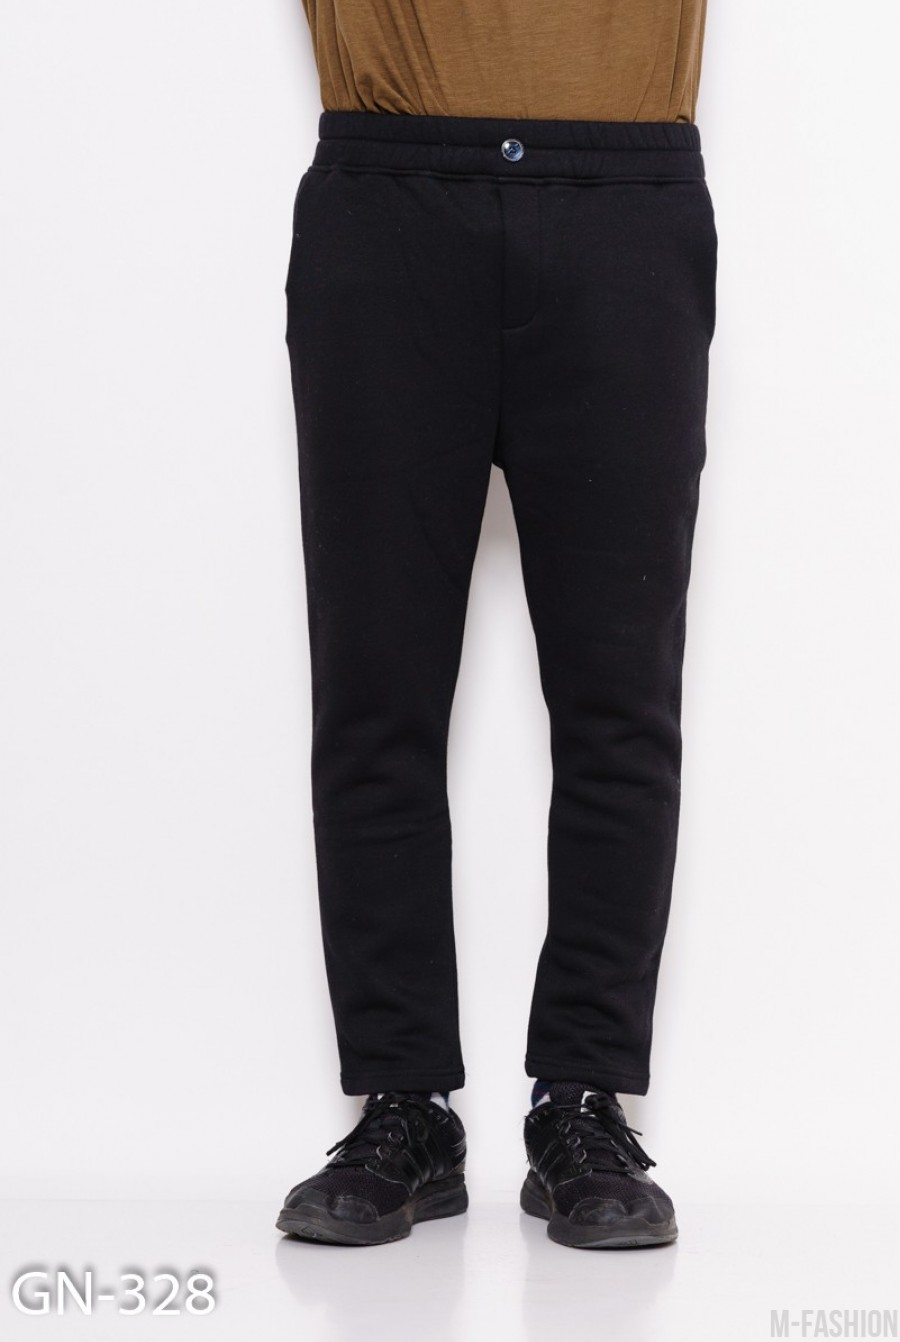 Черные трикотажные штаны на флисе - Фото 1